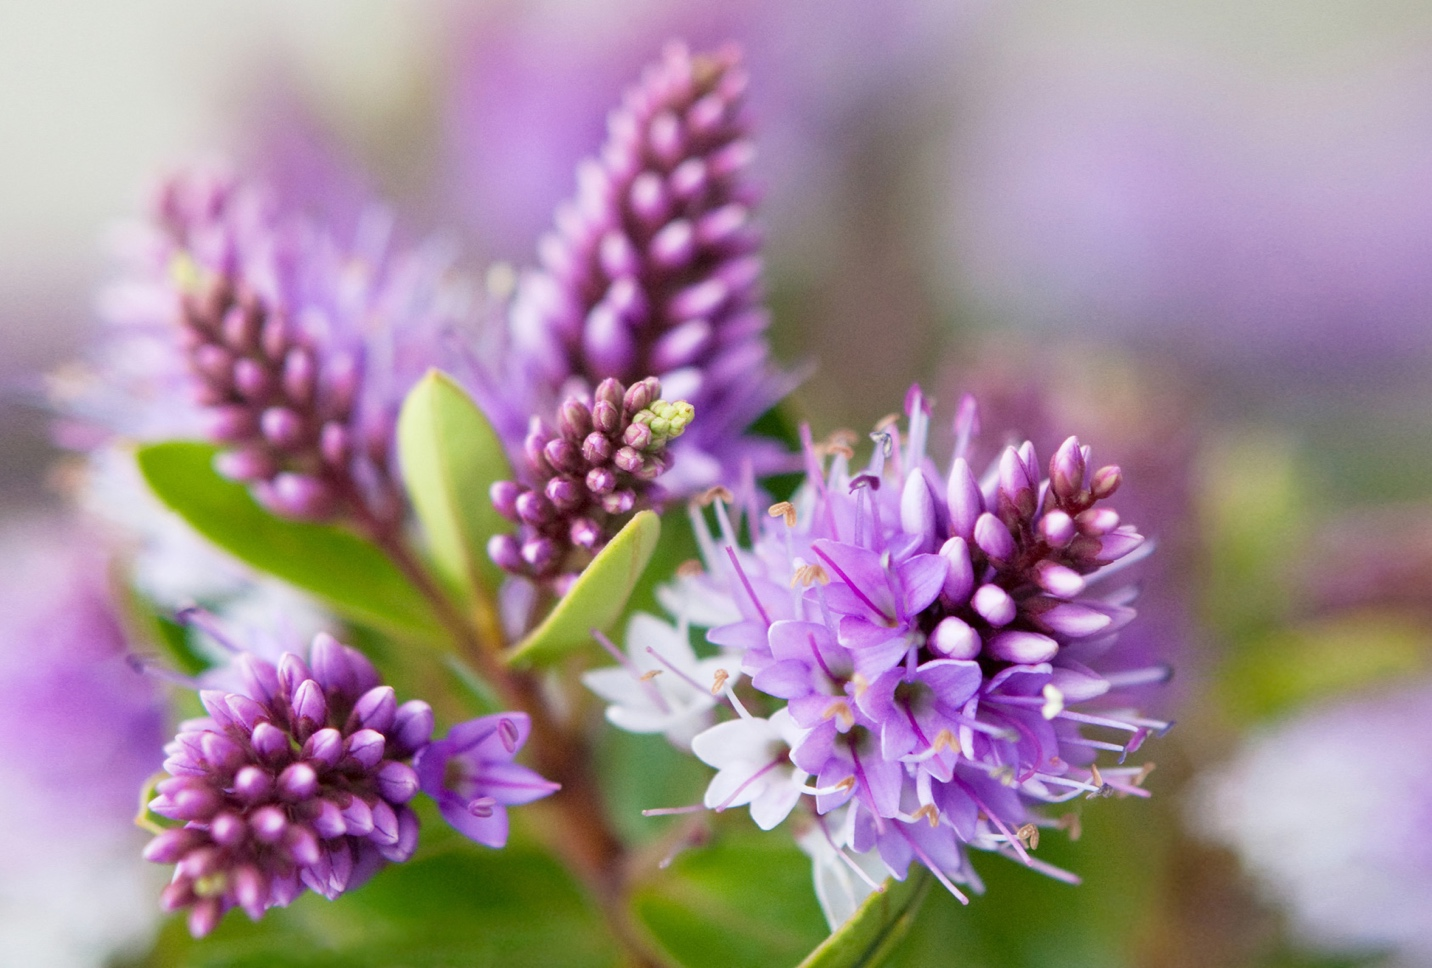 a purple flower zoomed in